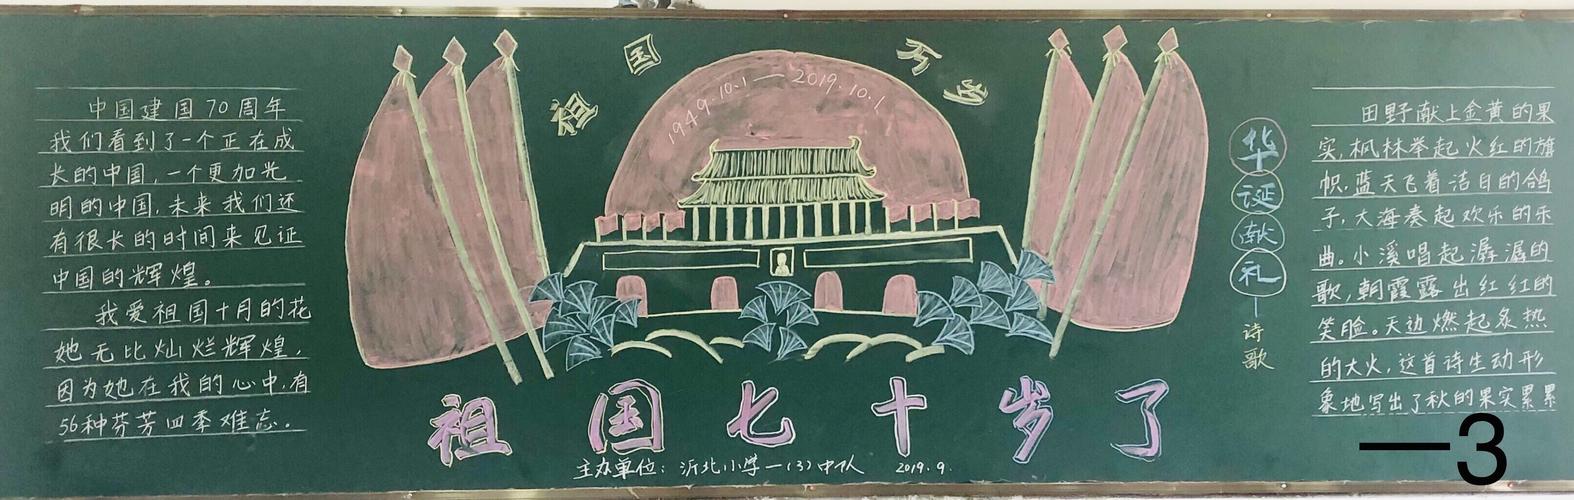 灌云县沂北中心小学迎国庆 庆祝建国70周年优秀黑板报作品展示